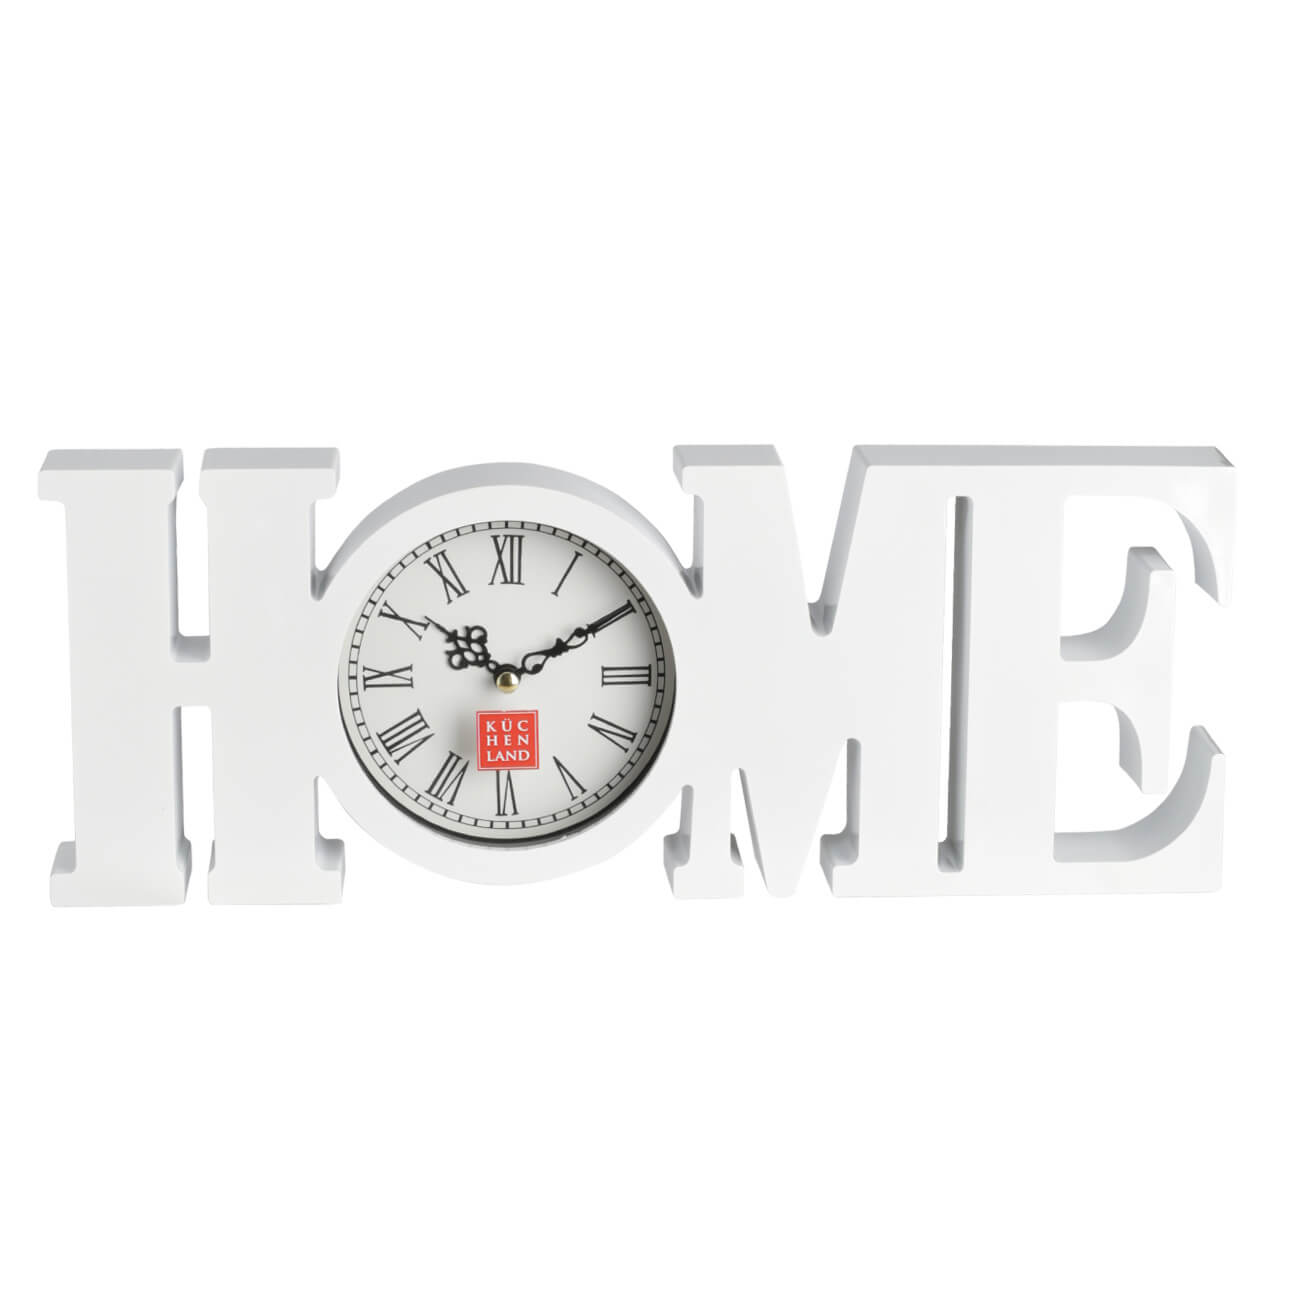 Часы настенные, 39х15 см, пластик/стекло, белые, Ноmе, Home deco